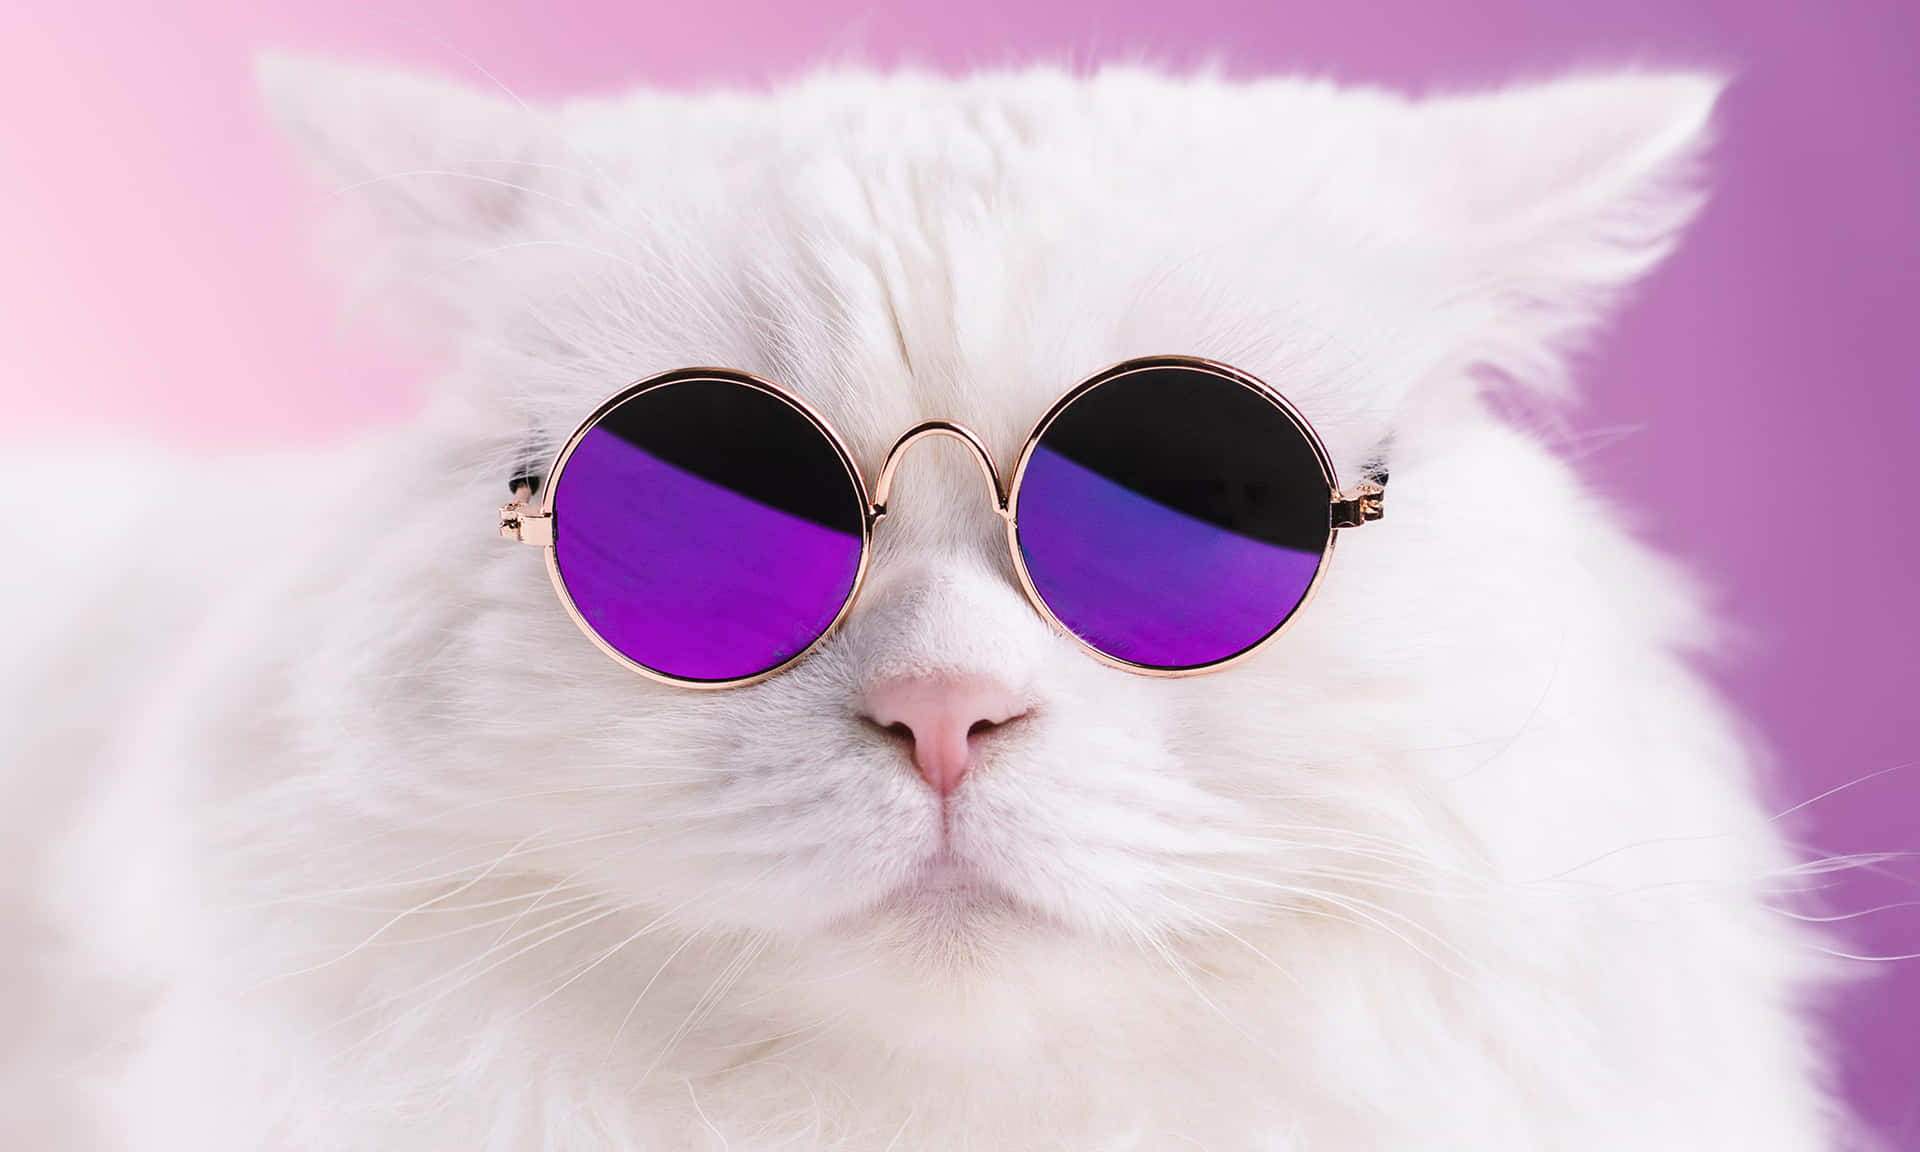 Memésgraciosos De Gatos: Imagen De Un Gato Blanco Con Gafas Moradas